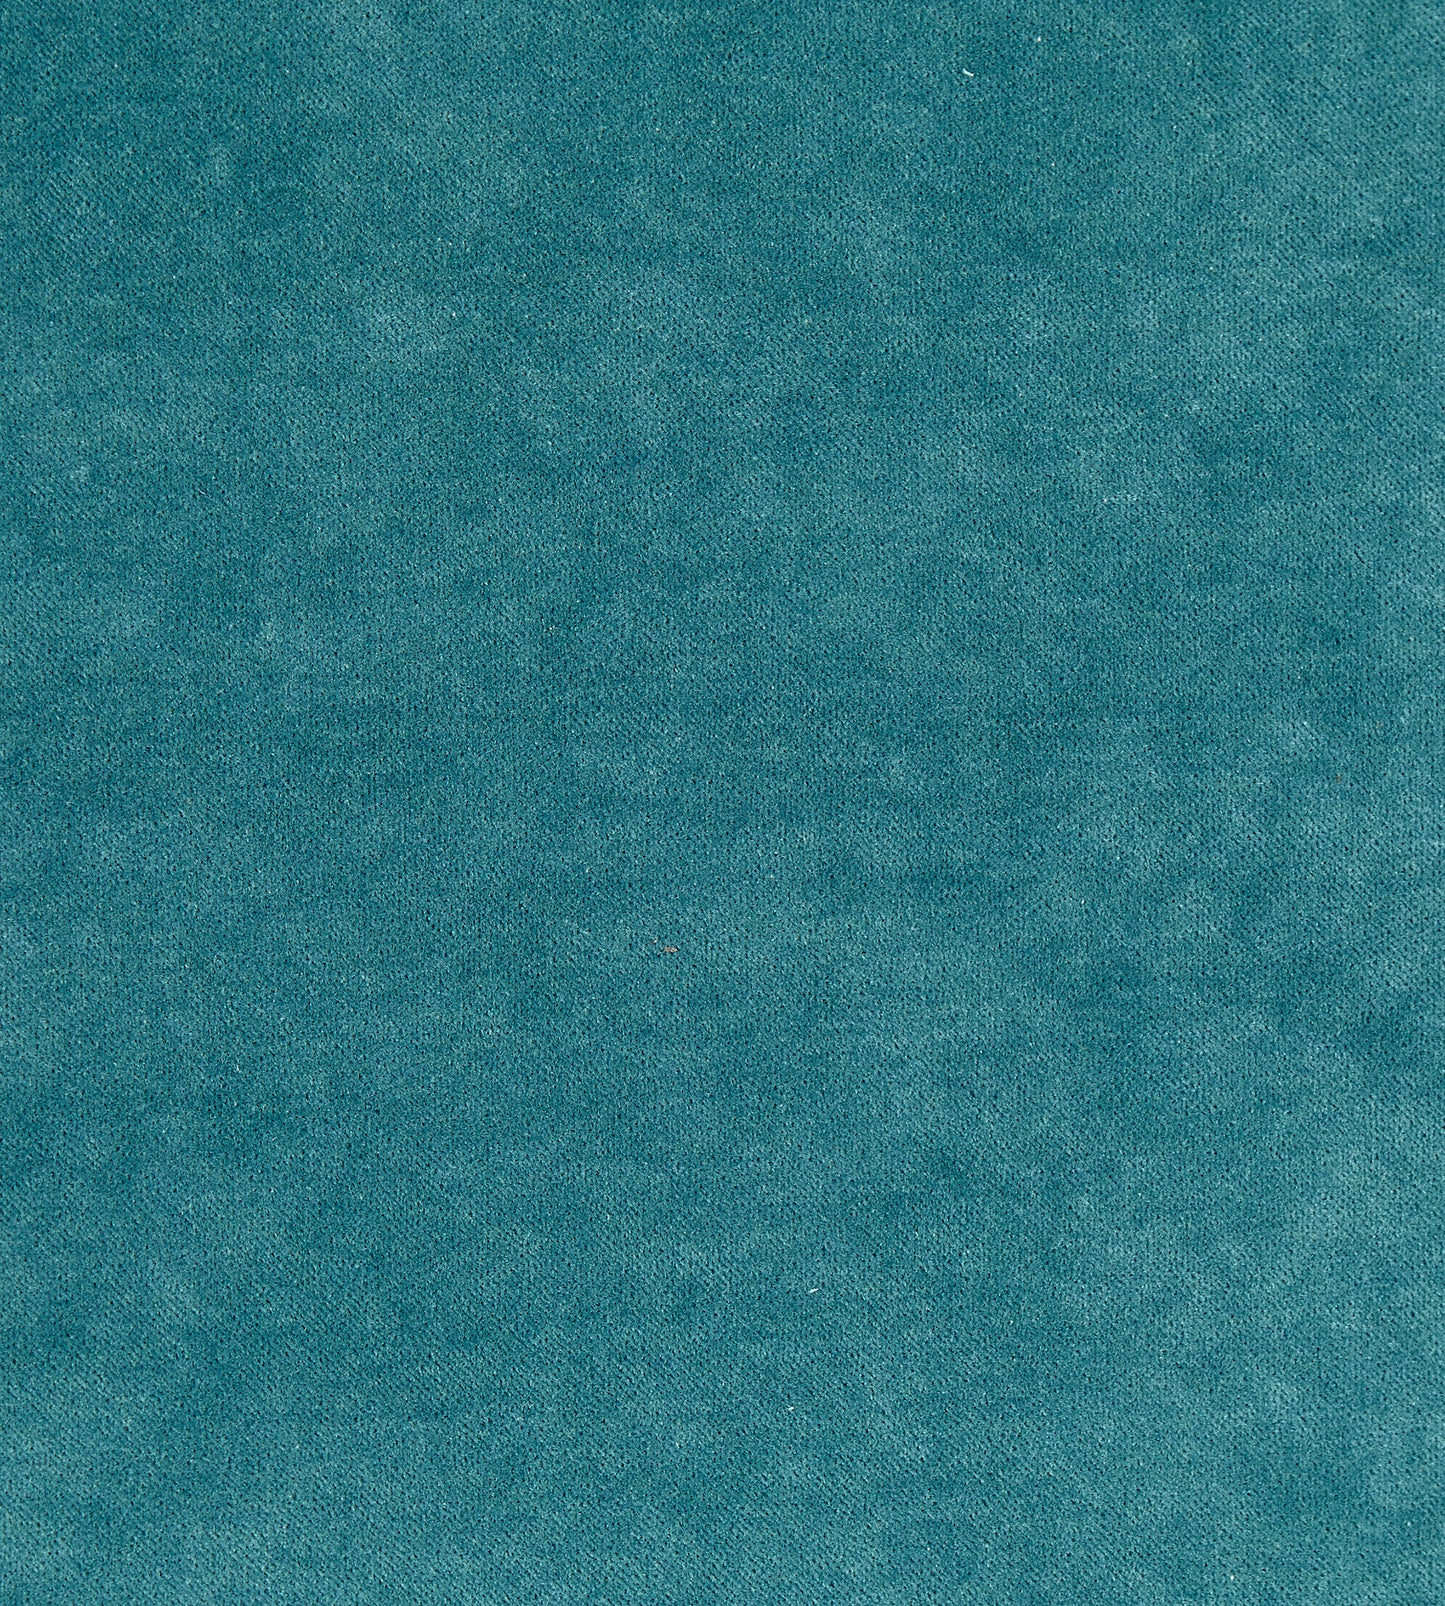 Purchase Boris Kroll Fabric Pattern number SC 0007K65110, Aurora Velvet Turquoise 1